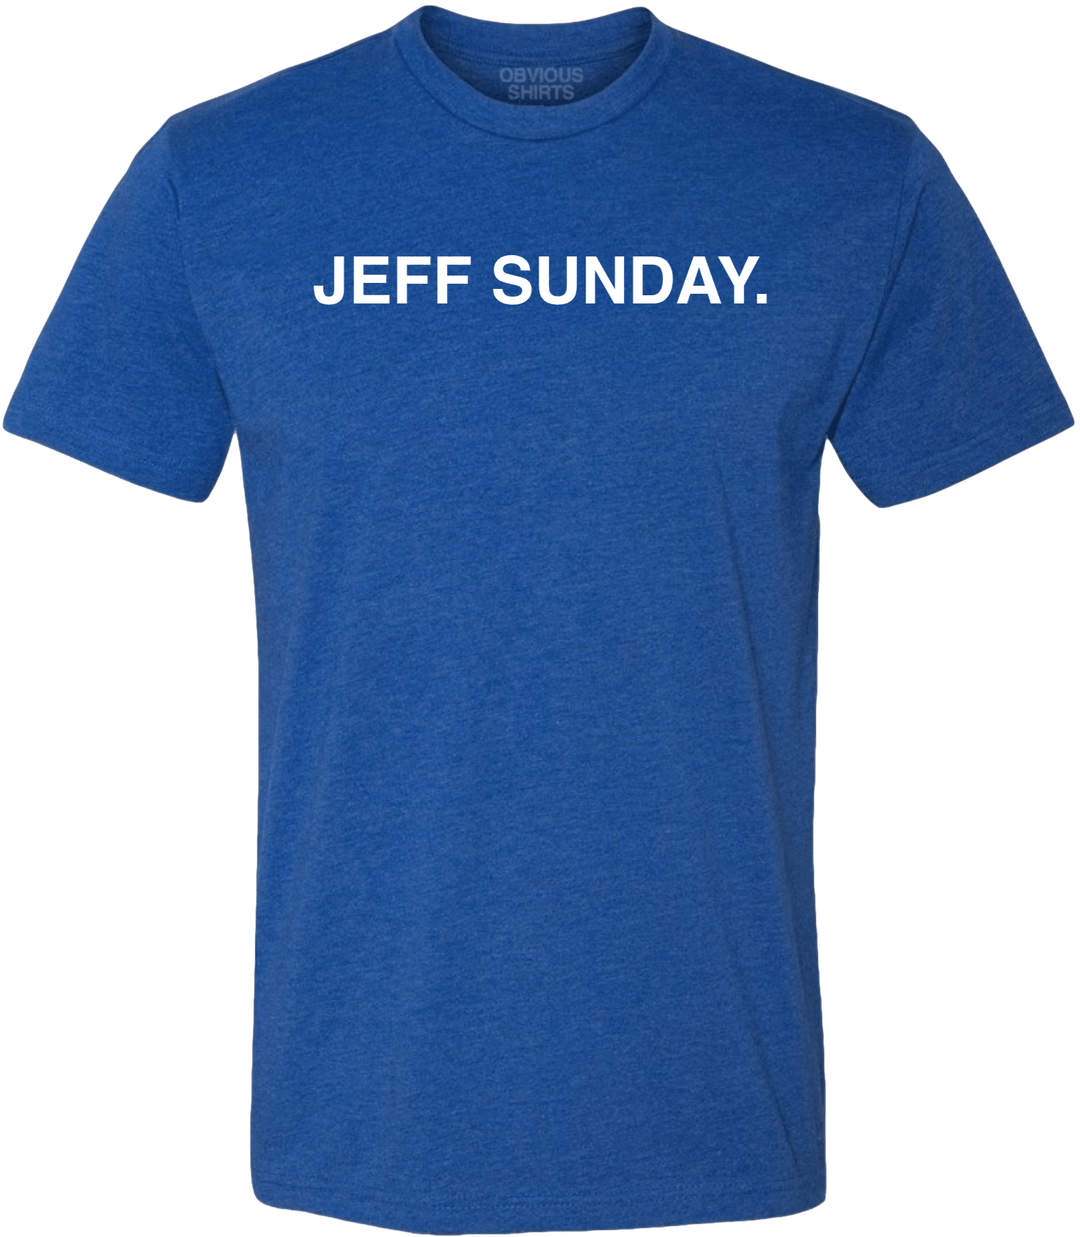 JEFF SUNDAY. - OBVIOUS SHIRTS